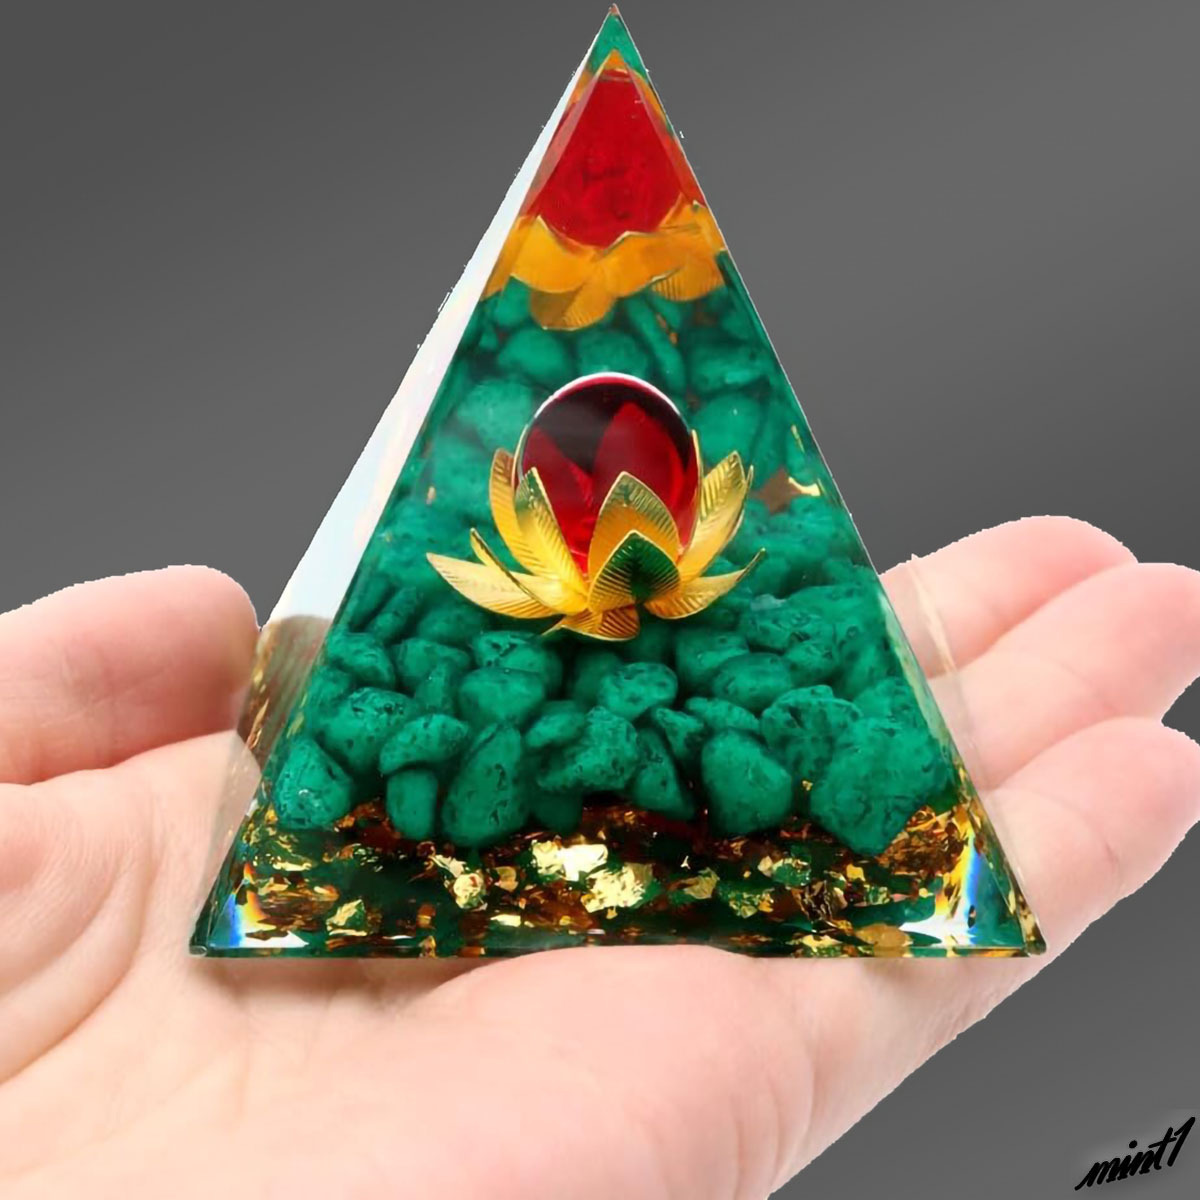 【浄化と幸運のアイテム】 オルゴナイトピラミッド 蓮の花 グリーン オブシディアン 神秘的 オルゴンエネルギー インテリア オブジェ